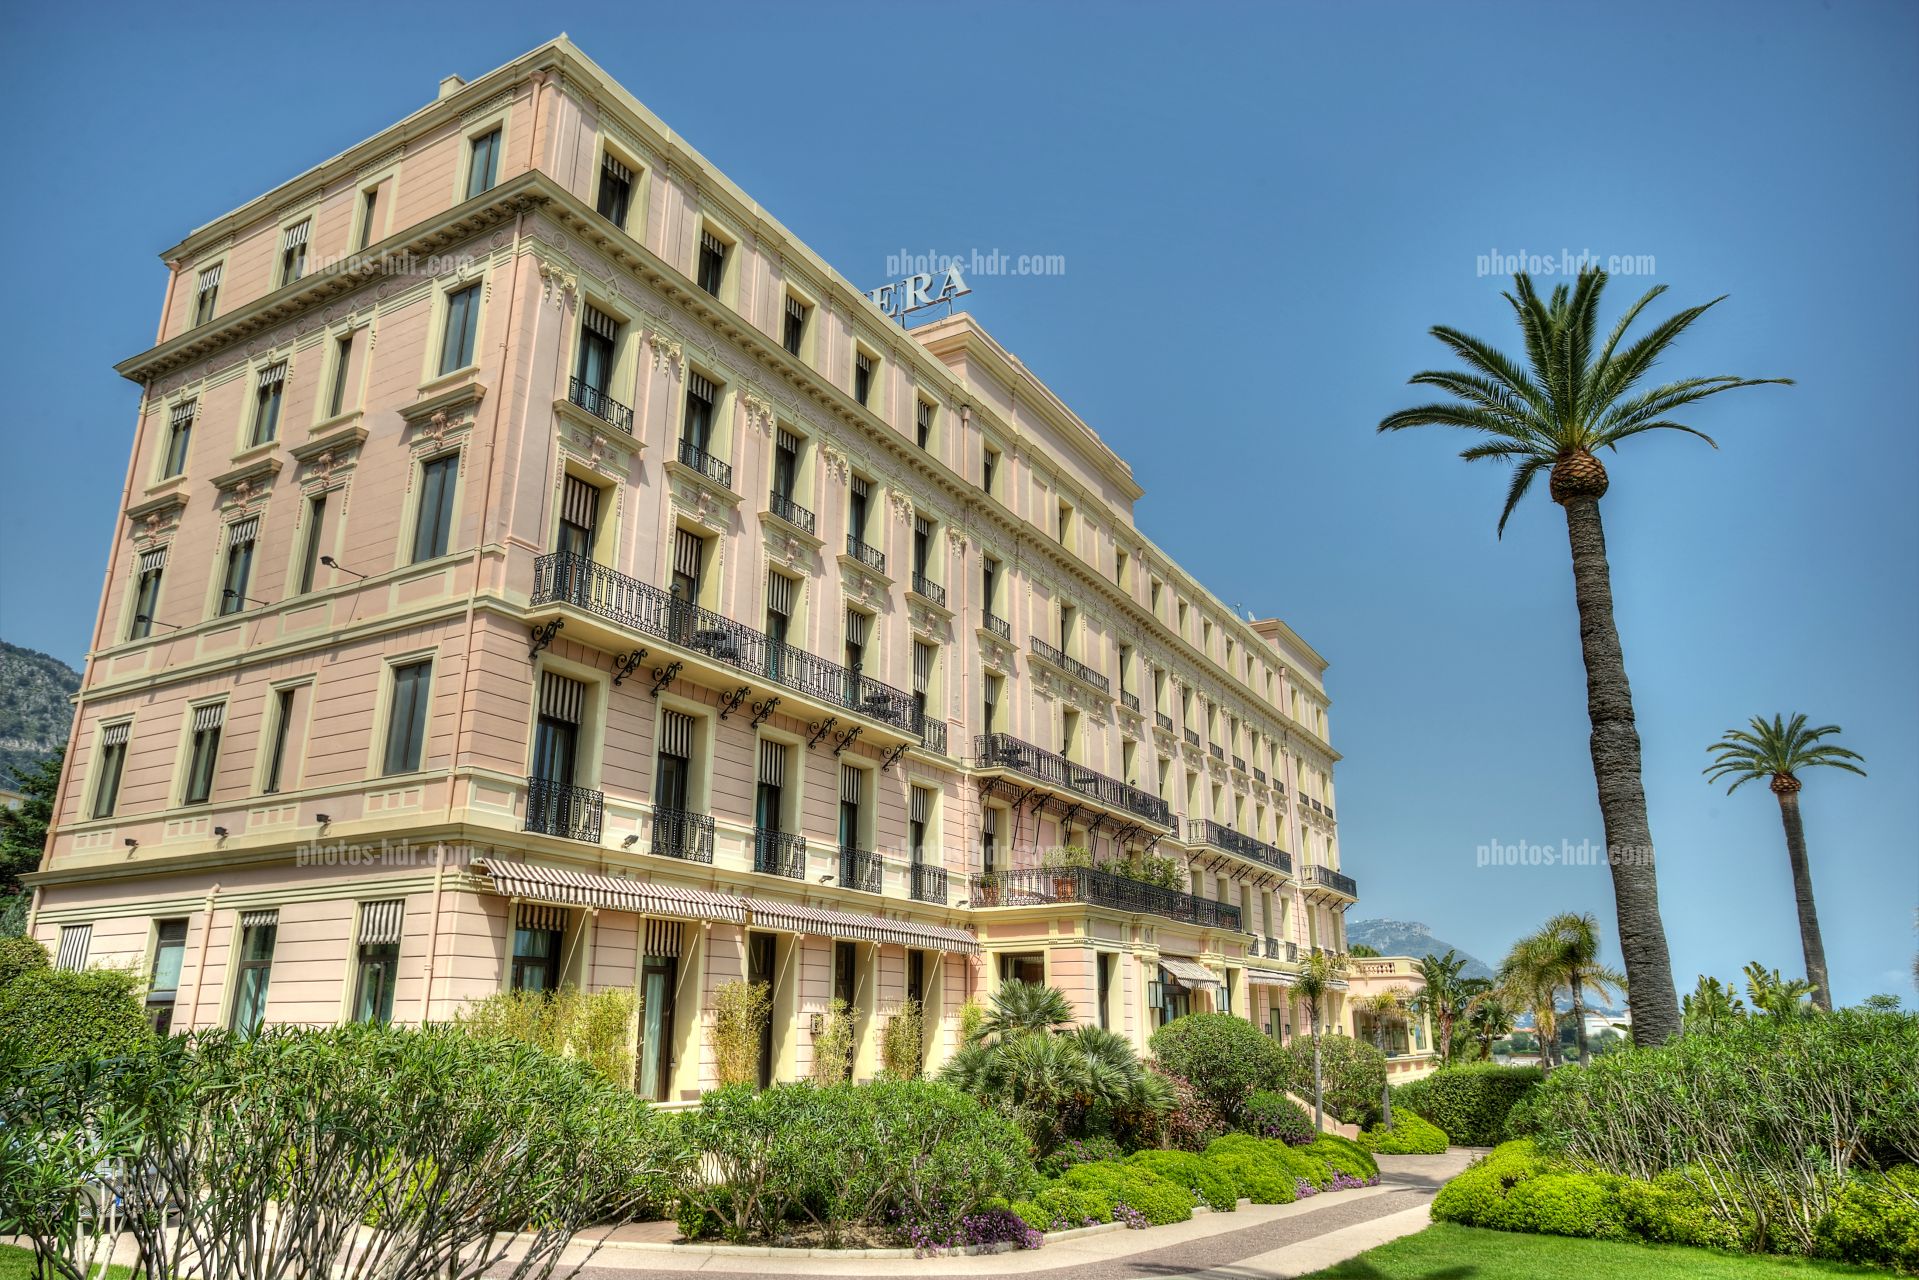 /Vue de la facade du Royal Riviera cÃ´tÃ© jardins